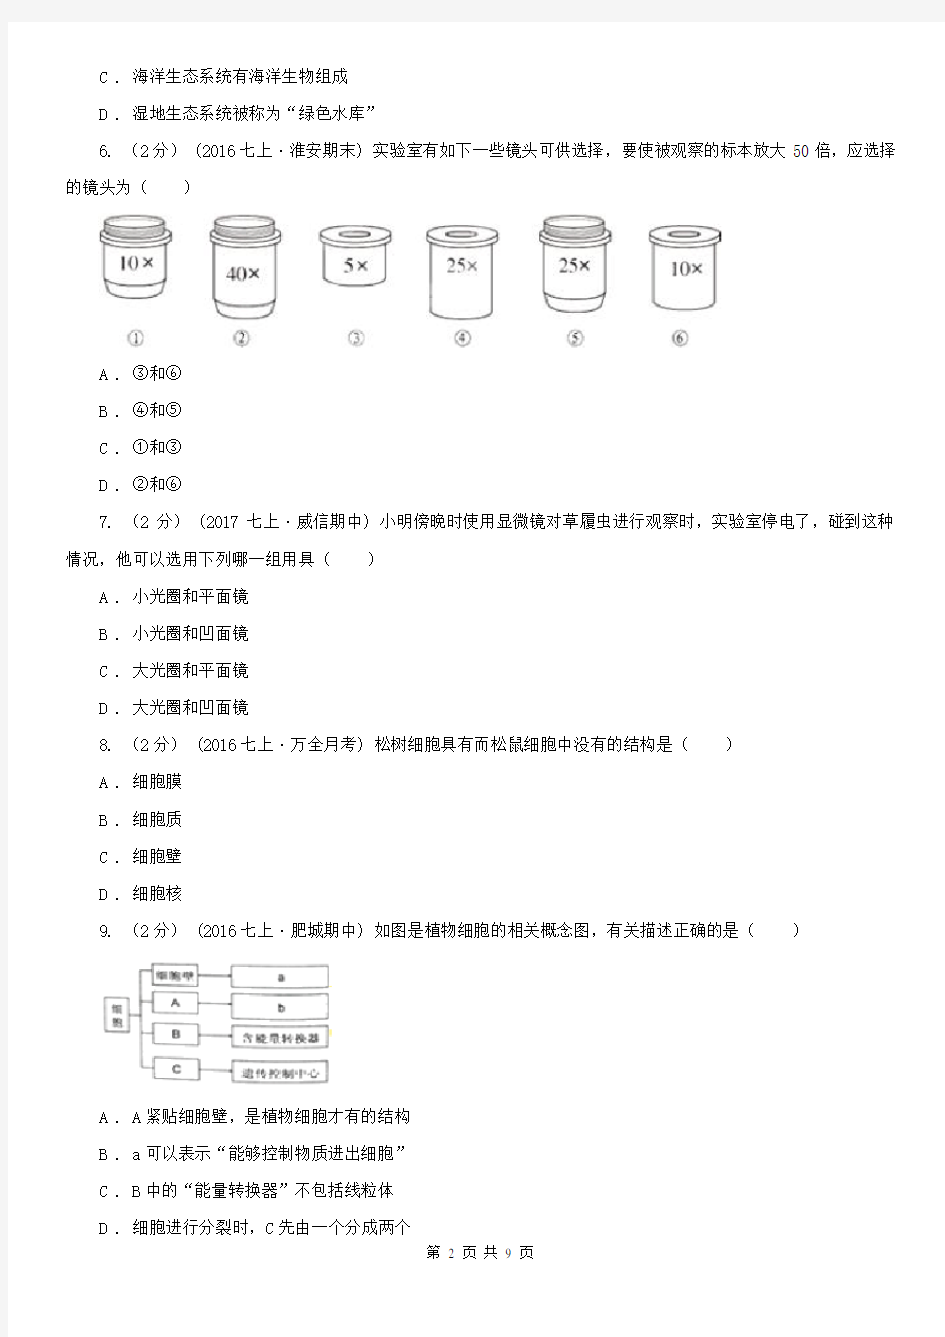 江西省景德镇市七年级上学期生物竞赛试卷(12月)